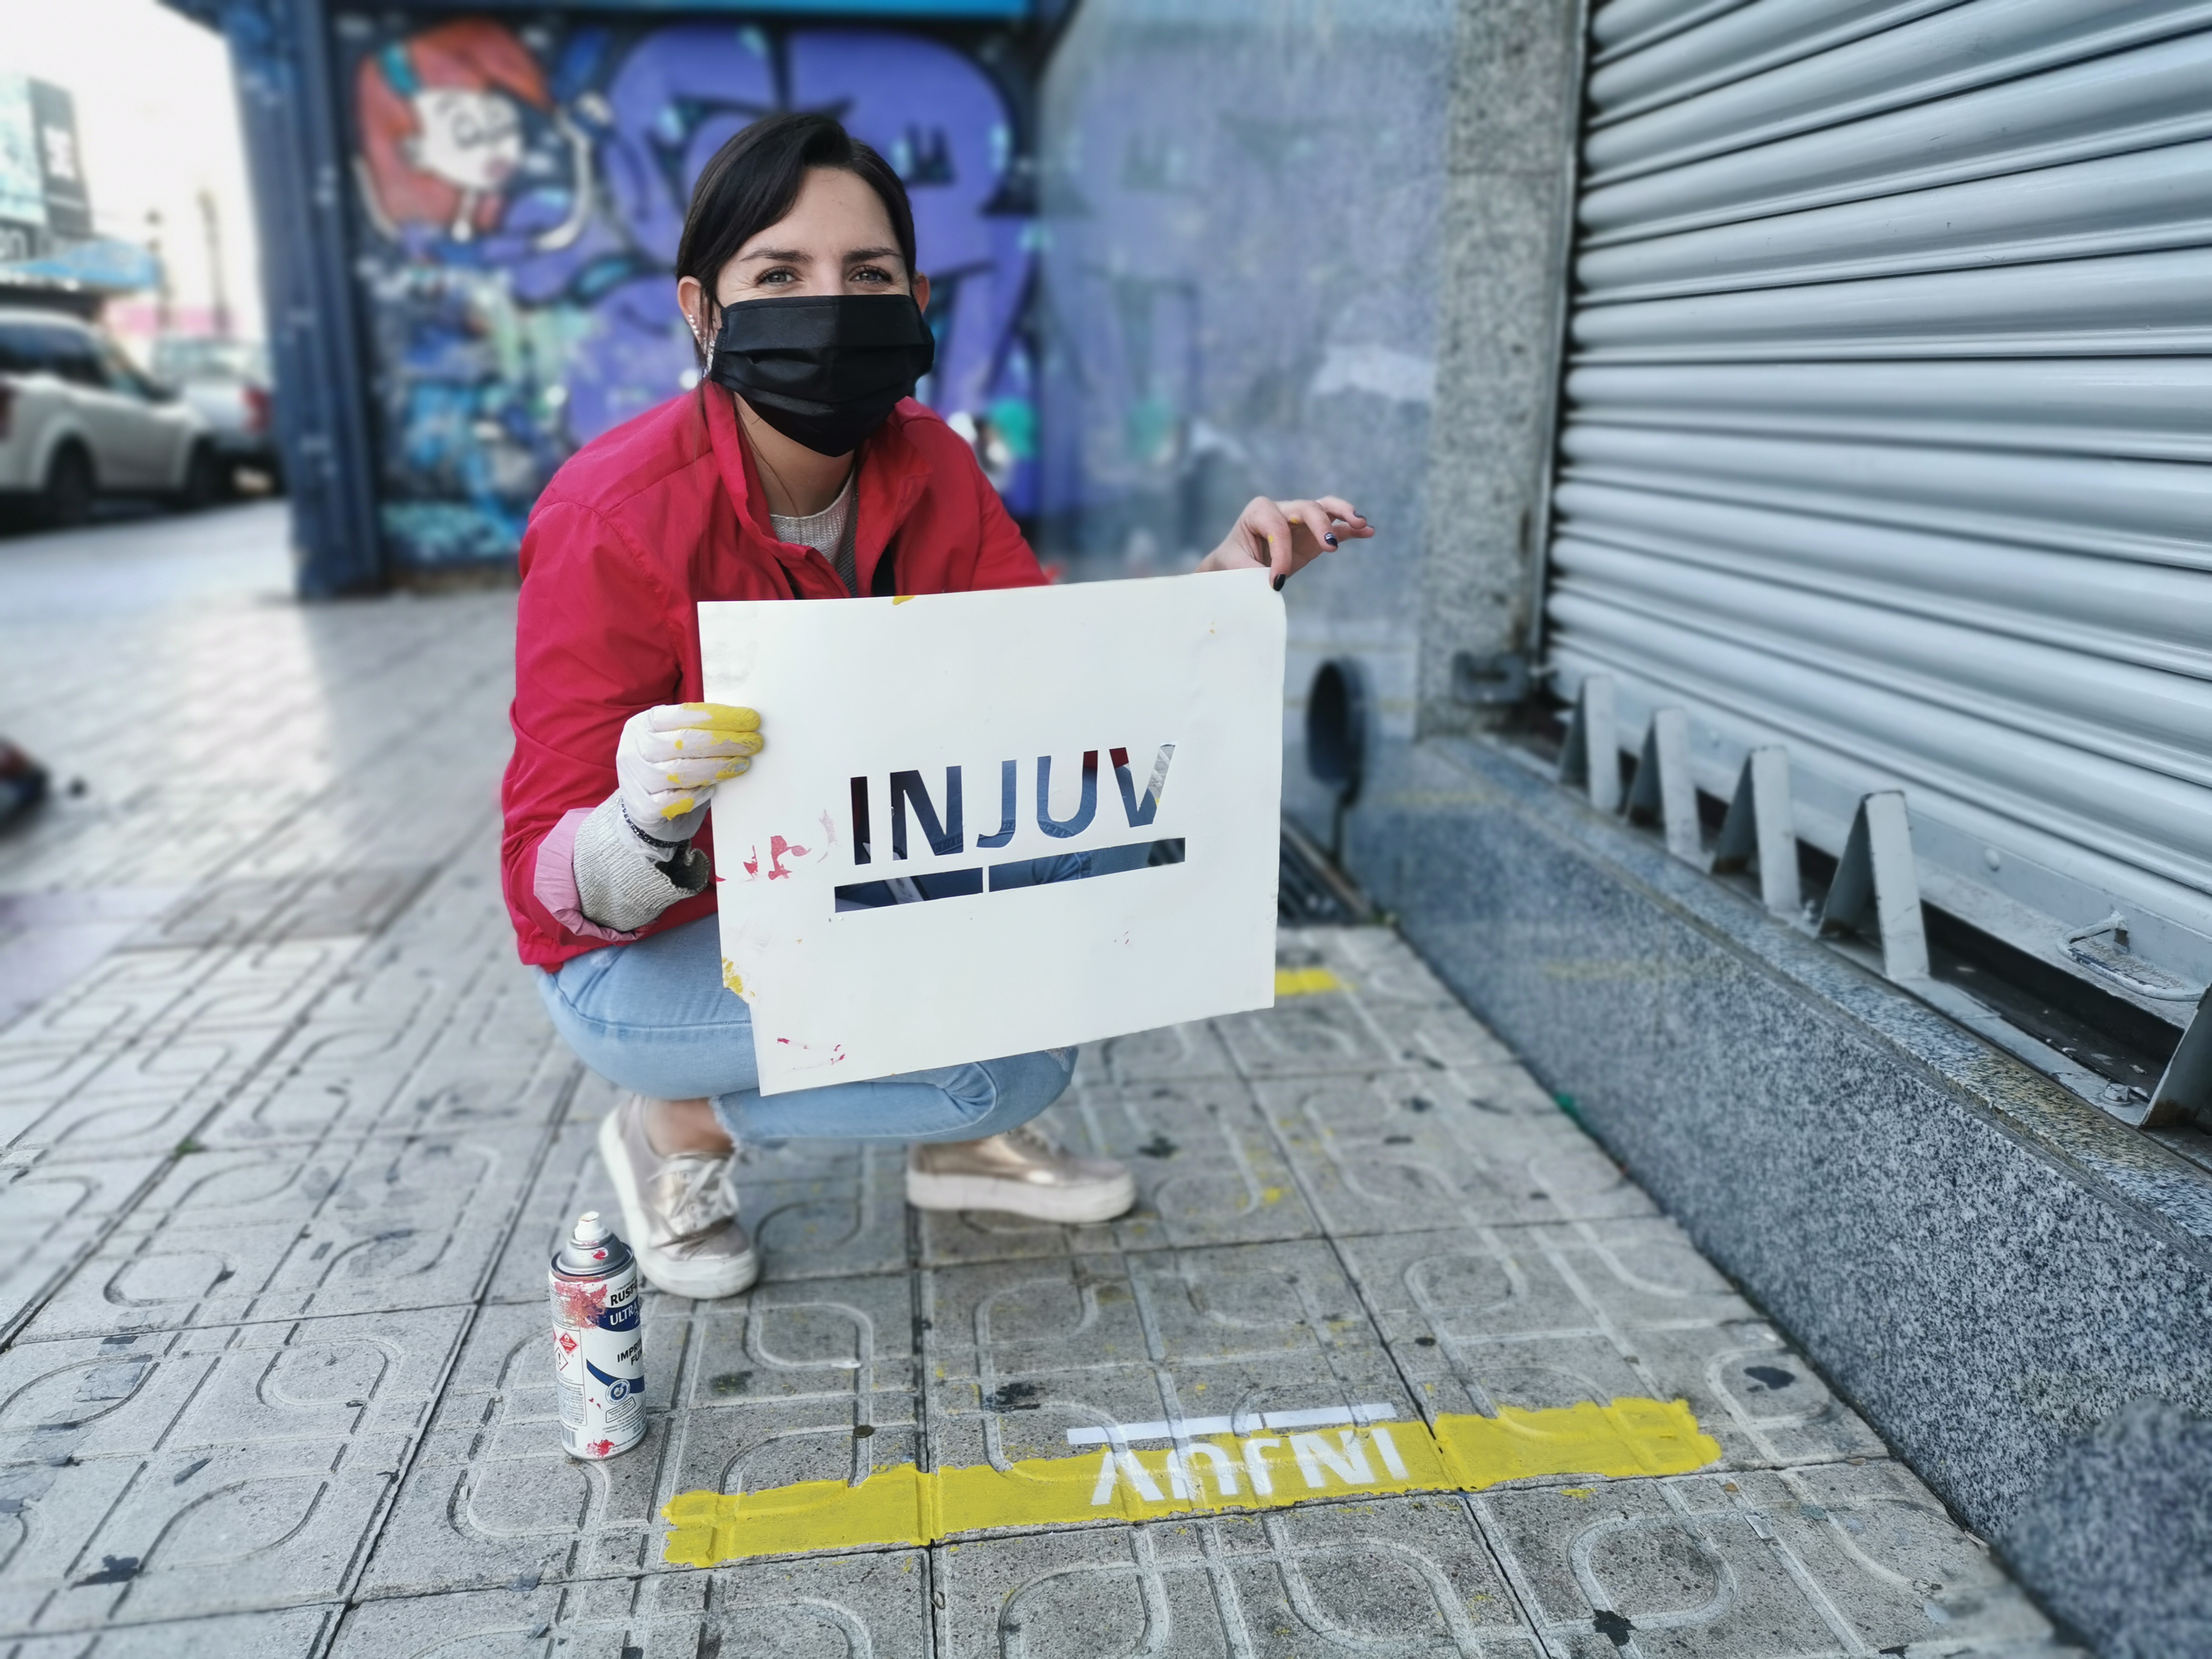 INJUV demarcó calles de la ciudad para evitar aglomeraciones y que la comunidad respete la distancia social